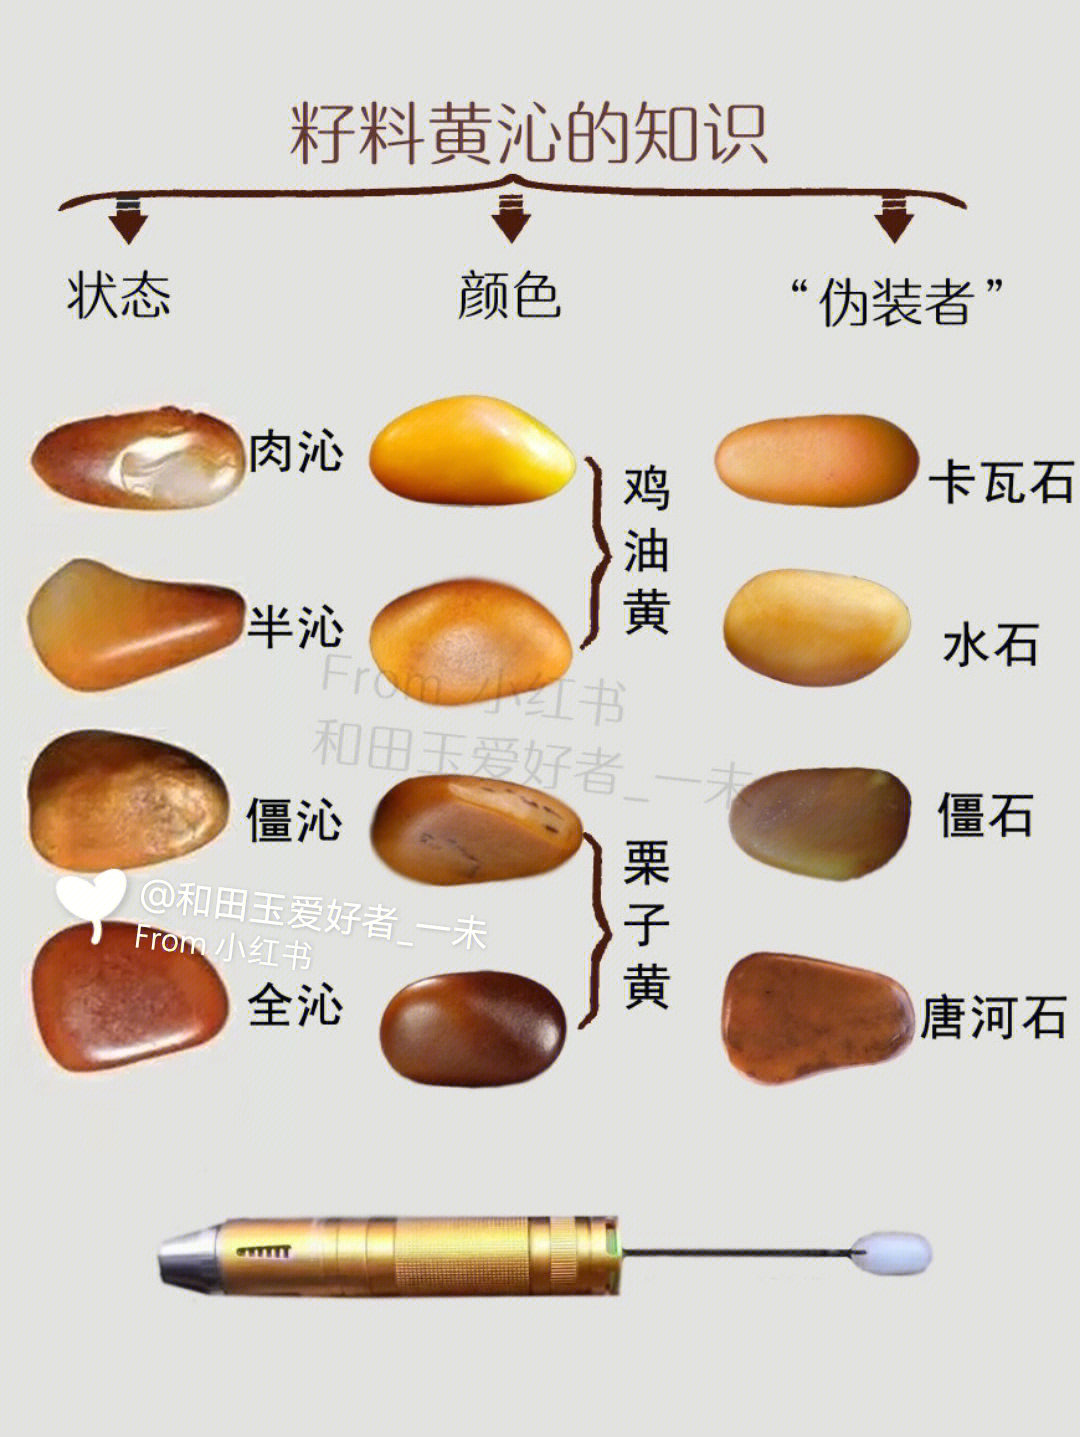 和田玉黄玉籽料特征图片